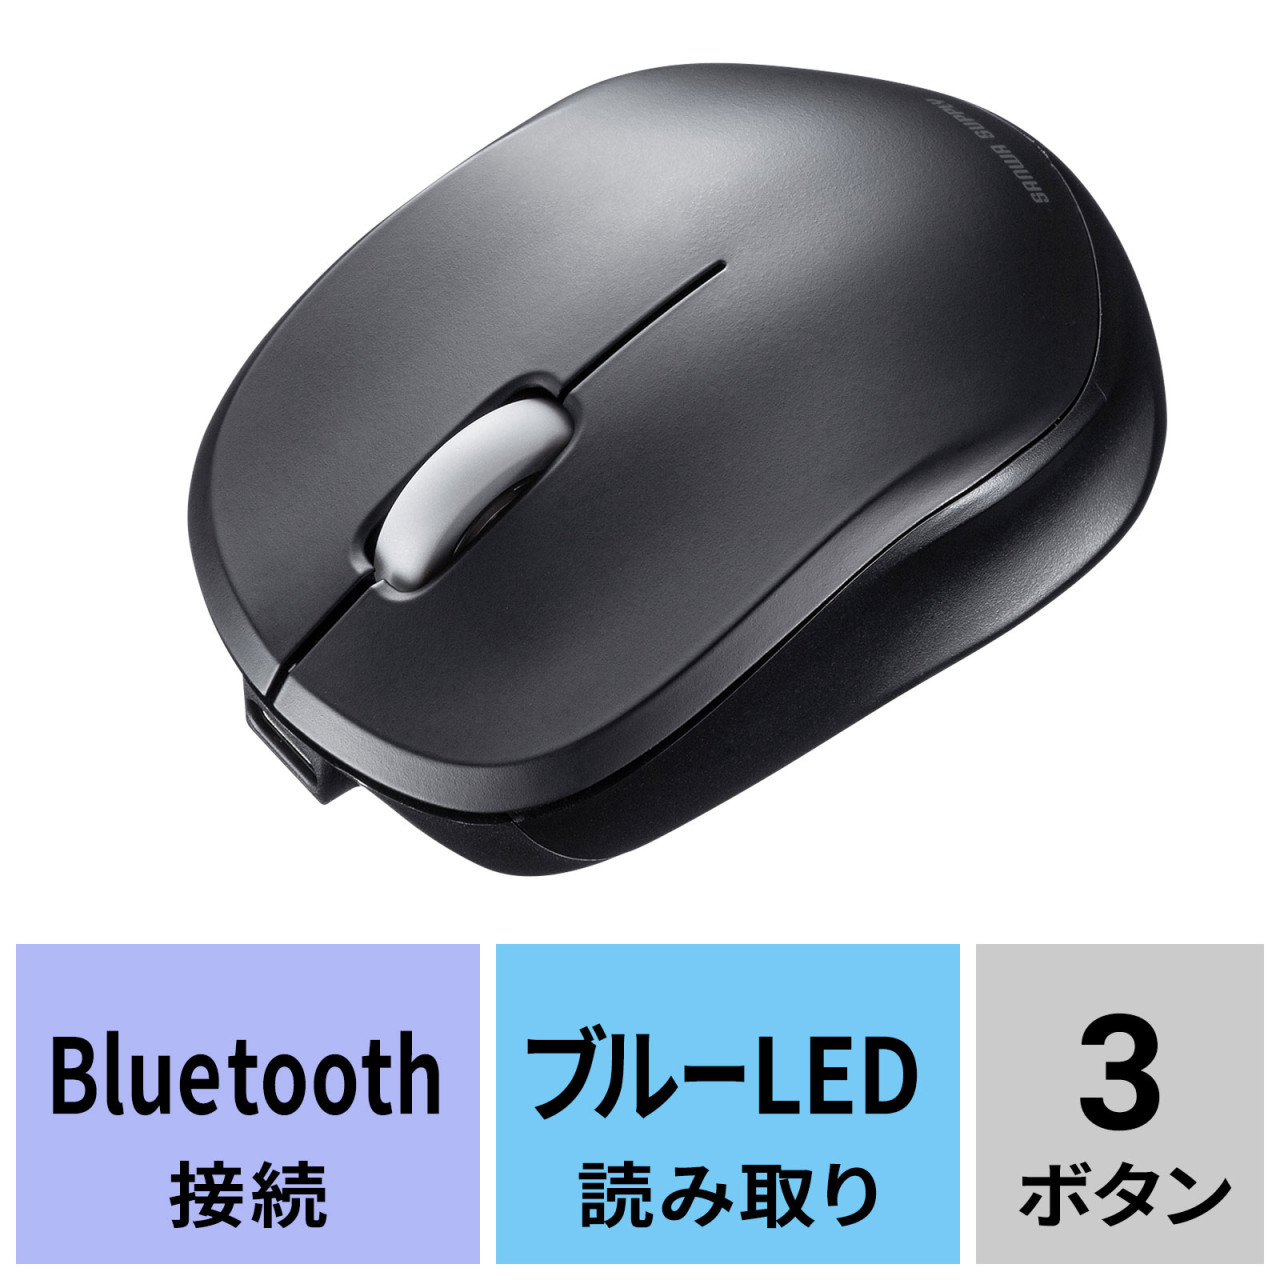 静音Bluetoothマウス USB充電式 ブラック MA-BBS308BKの通販ならサンワダイレクト